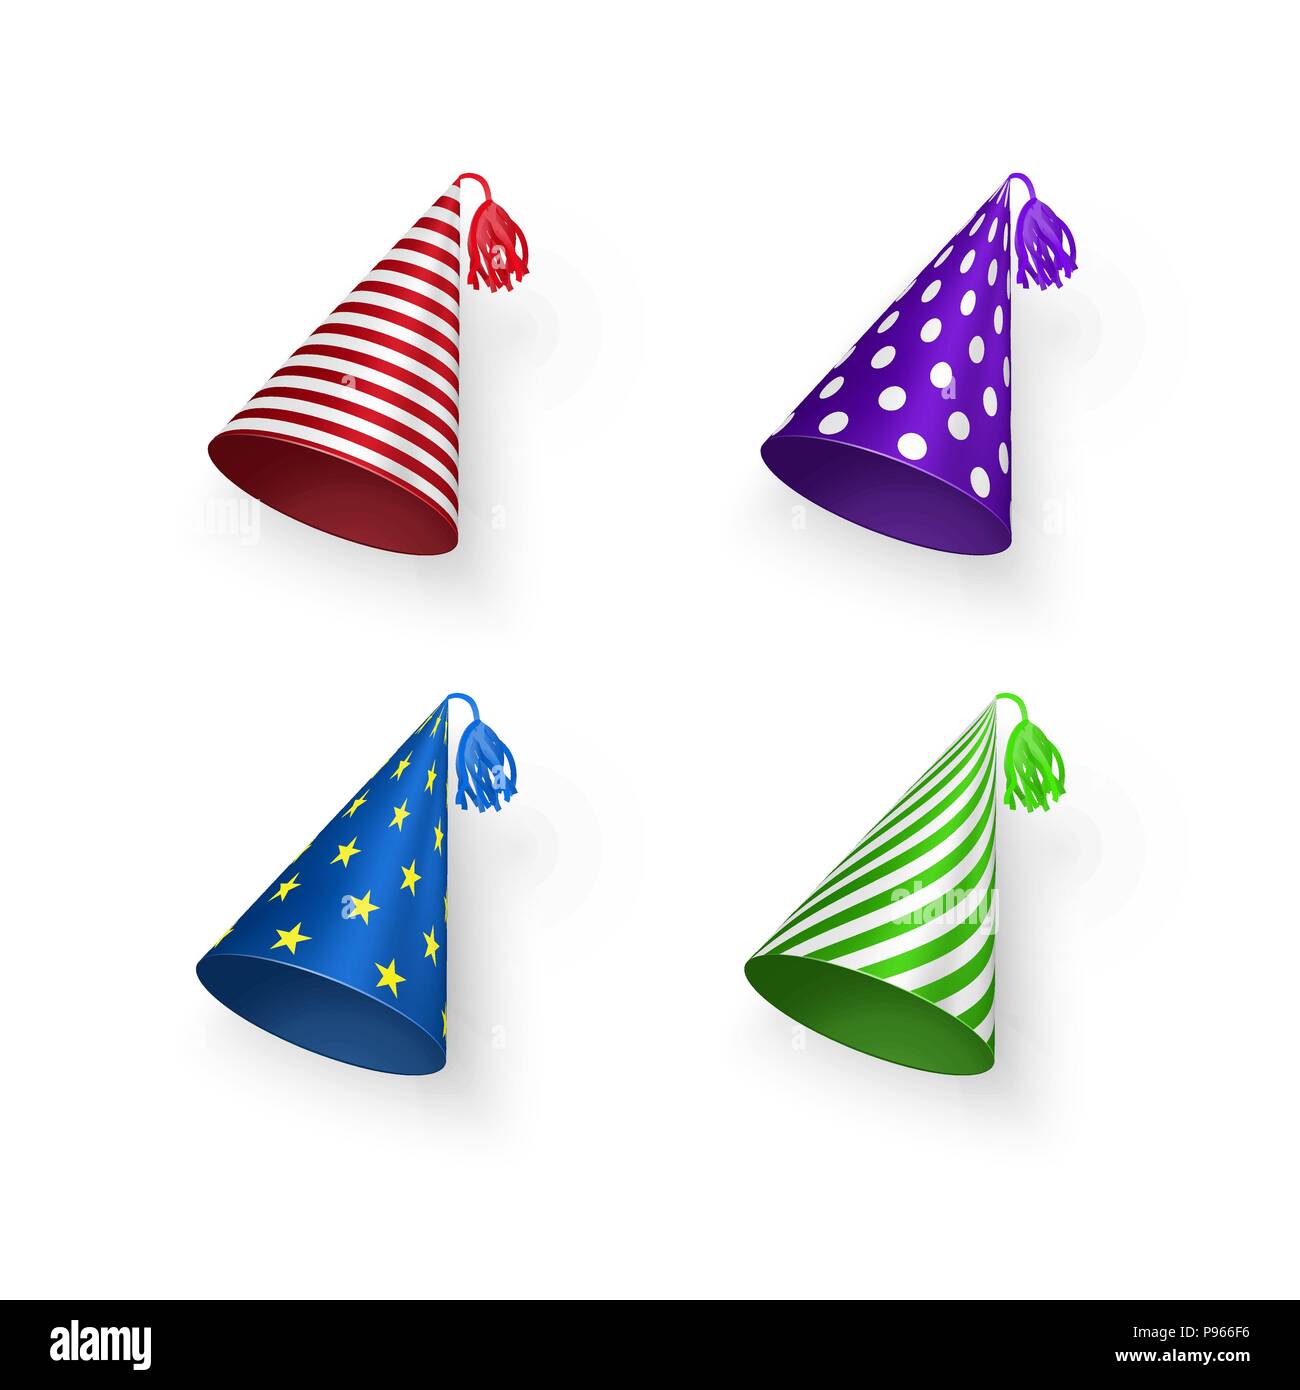 Geburtstag hat. Bunte Geburtstag Hüte mit geometrischen Mustern Kreise, Streifen und Sternen. Vector Illustration auf weißem Hintergrund Stock Vektor